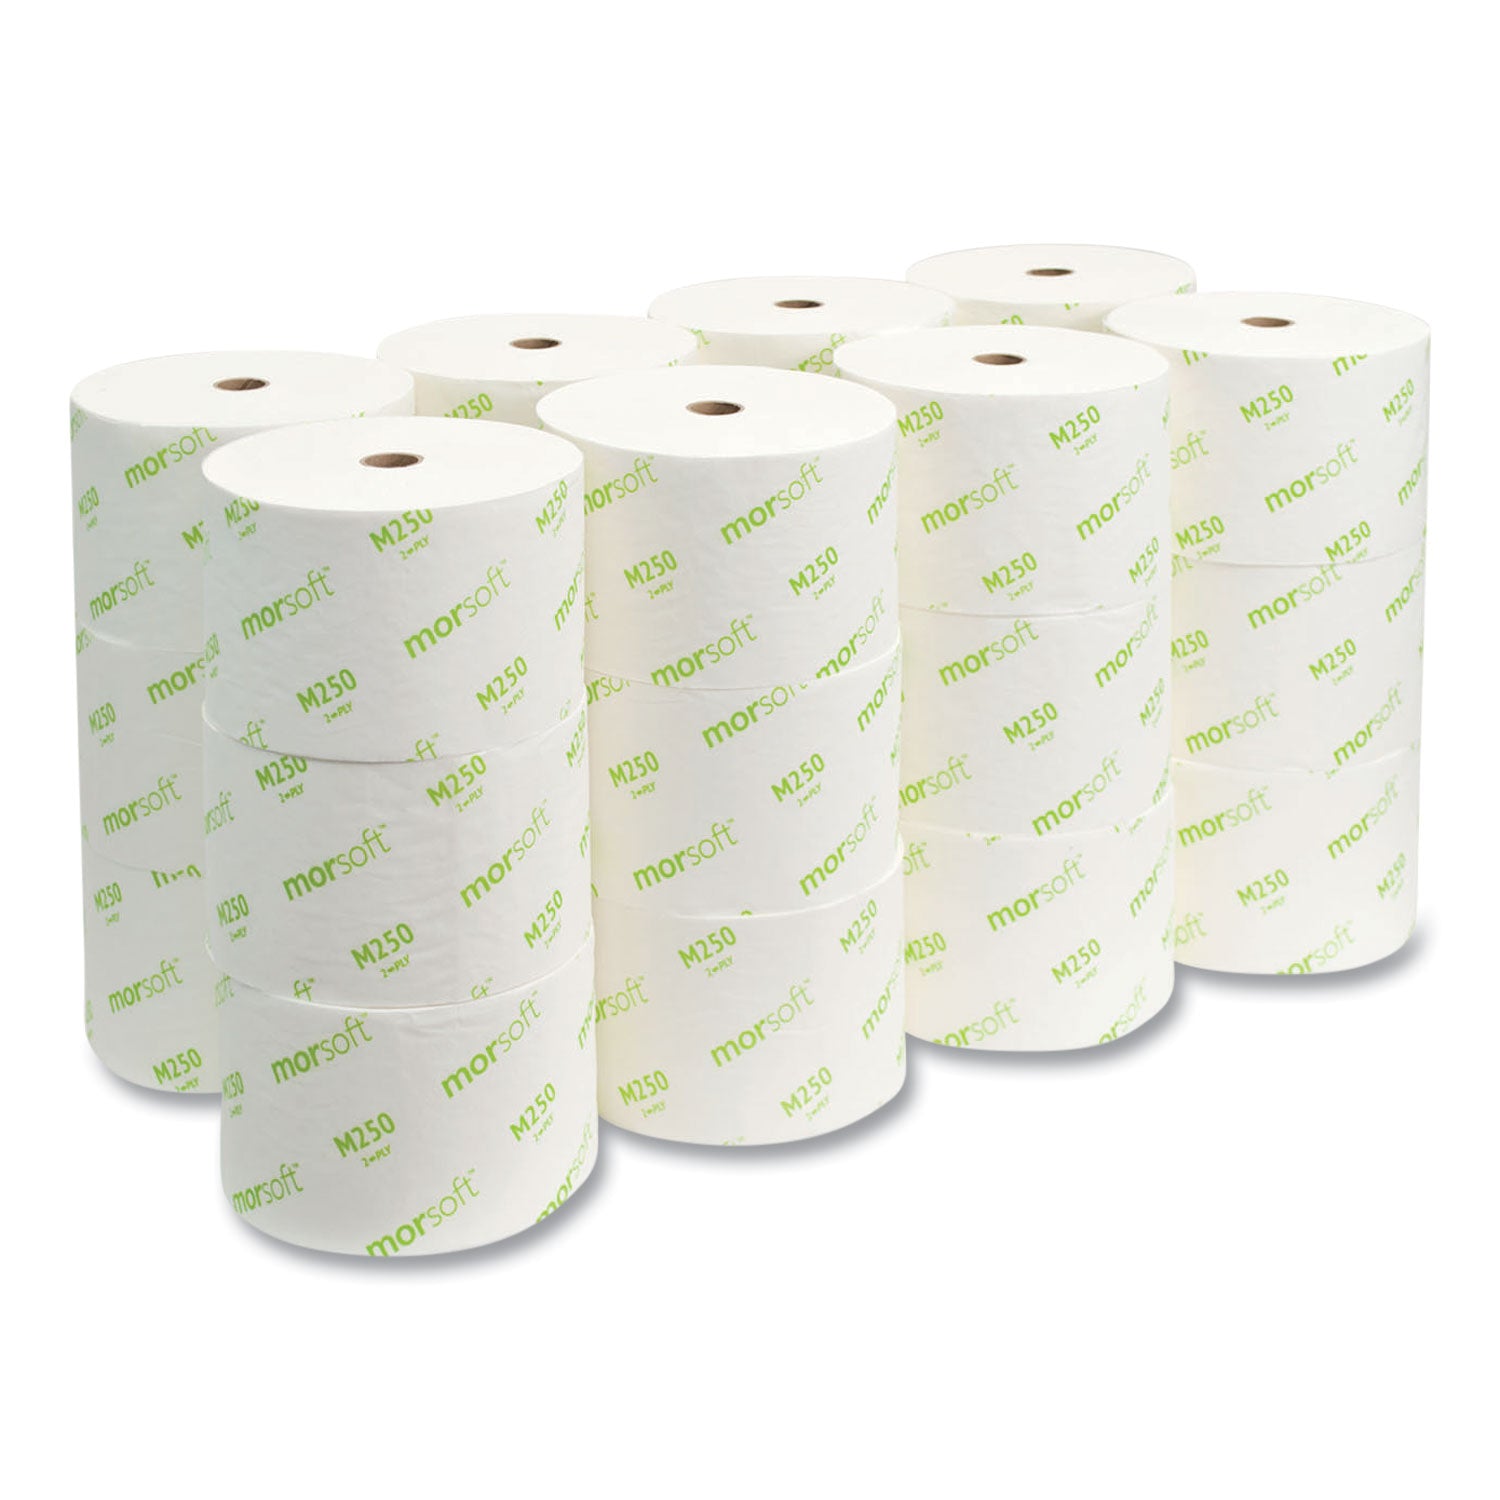 small-core-bath-tissue-septic-safe-2-ply-white-1250-roll-24-rolls-carton_morm250 - 4